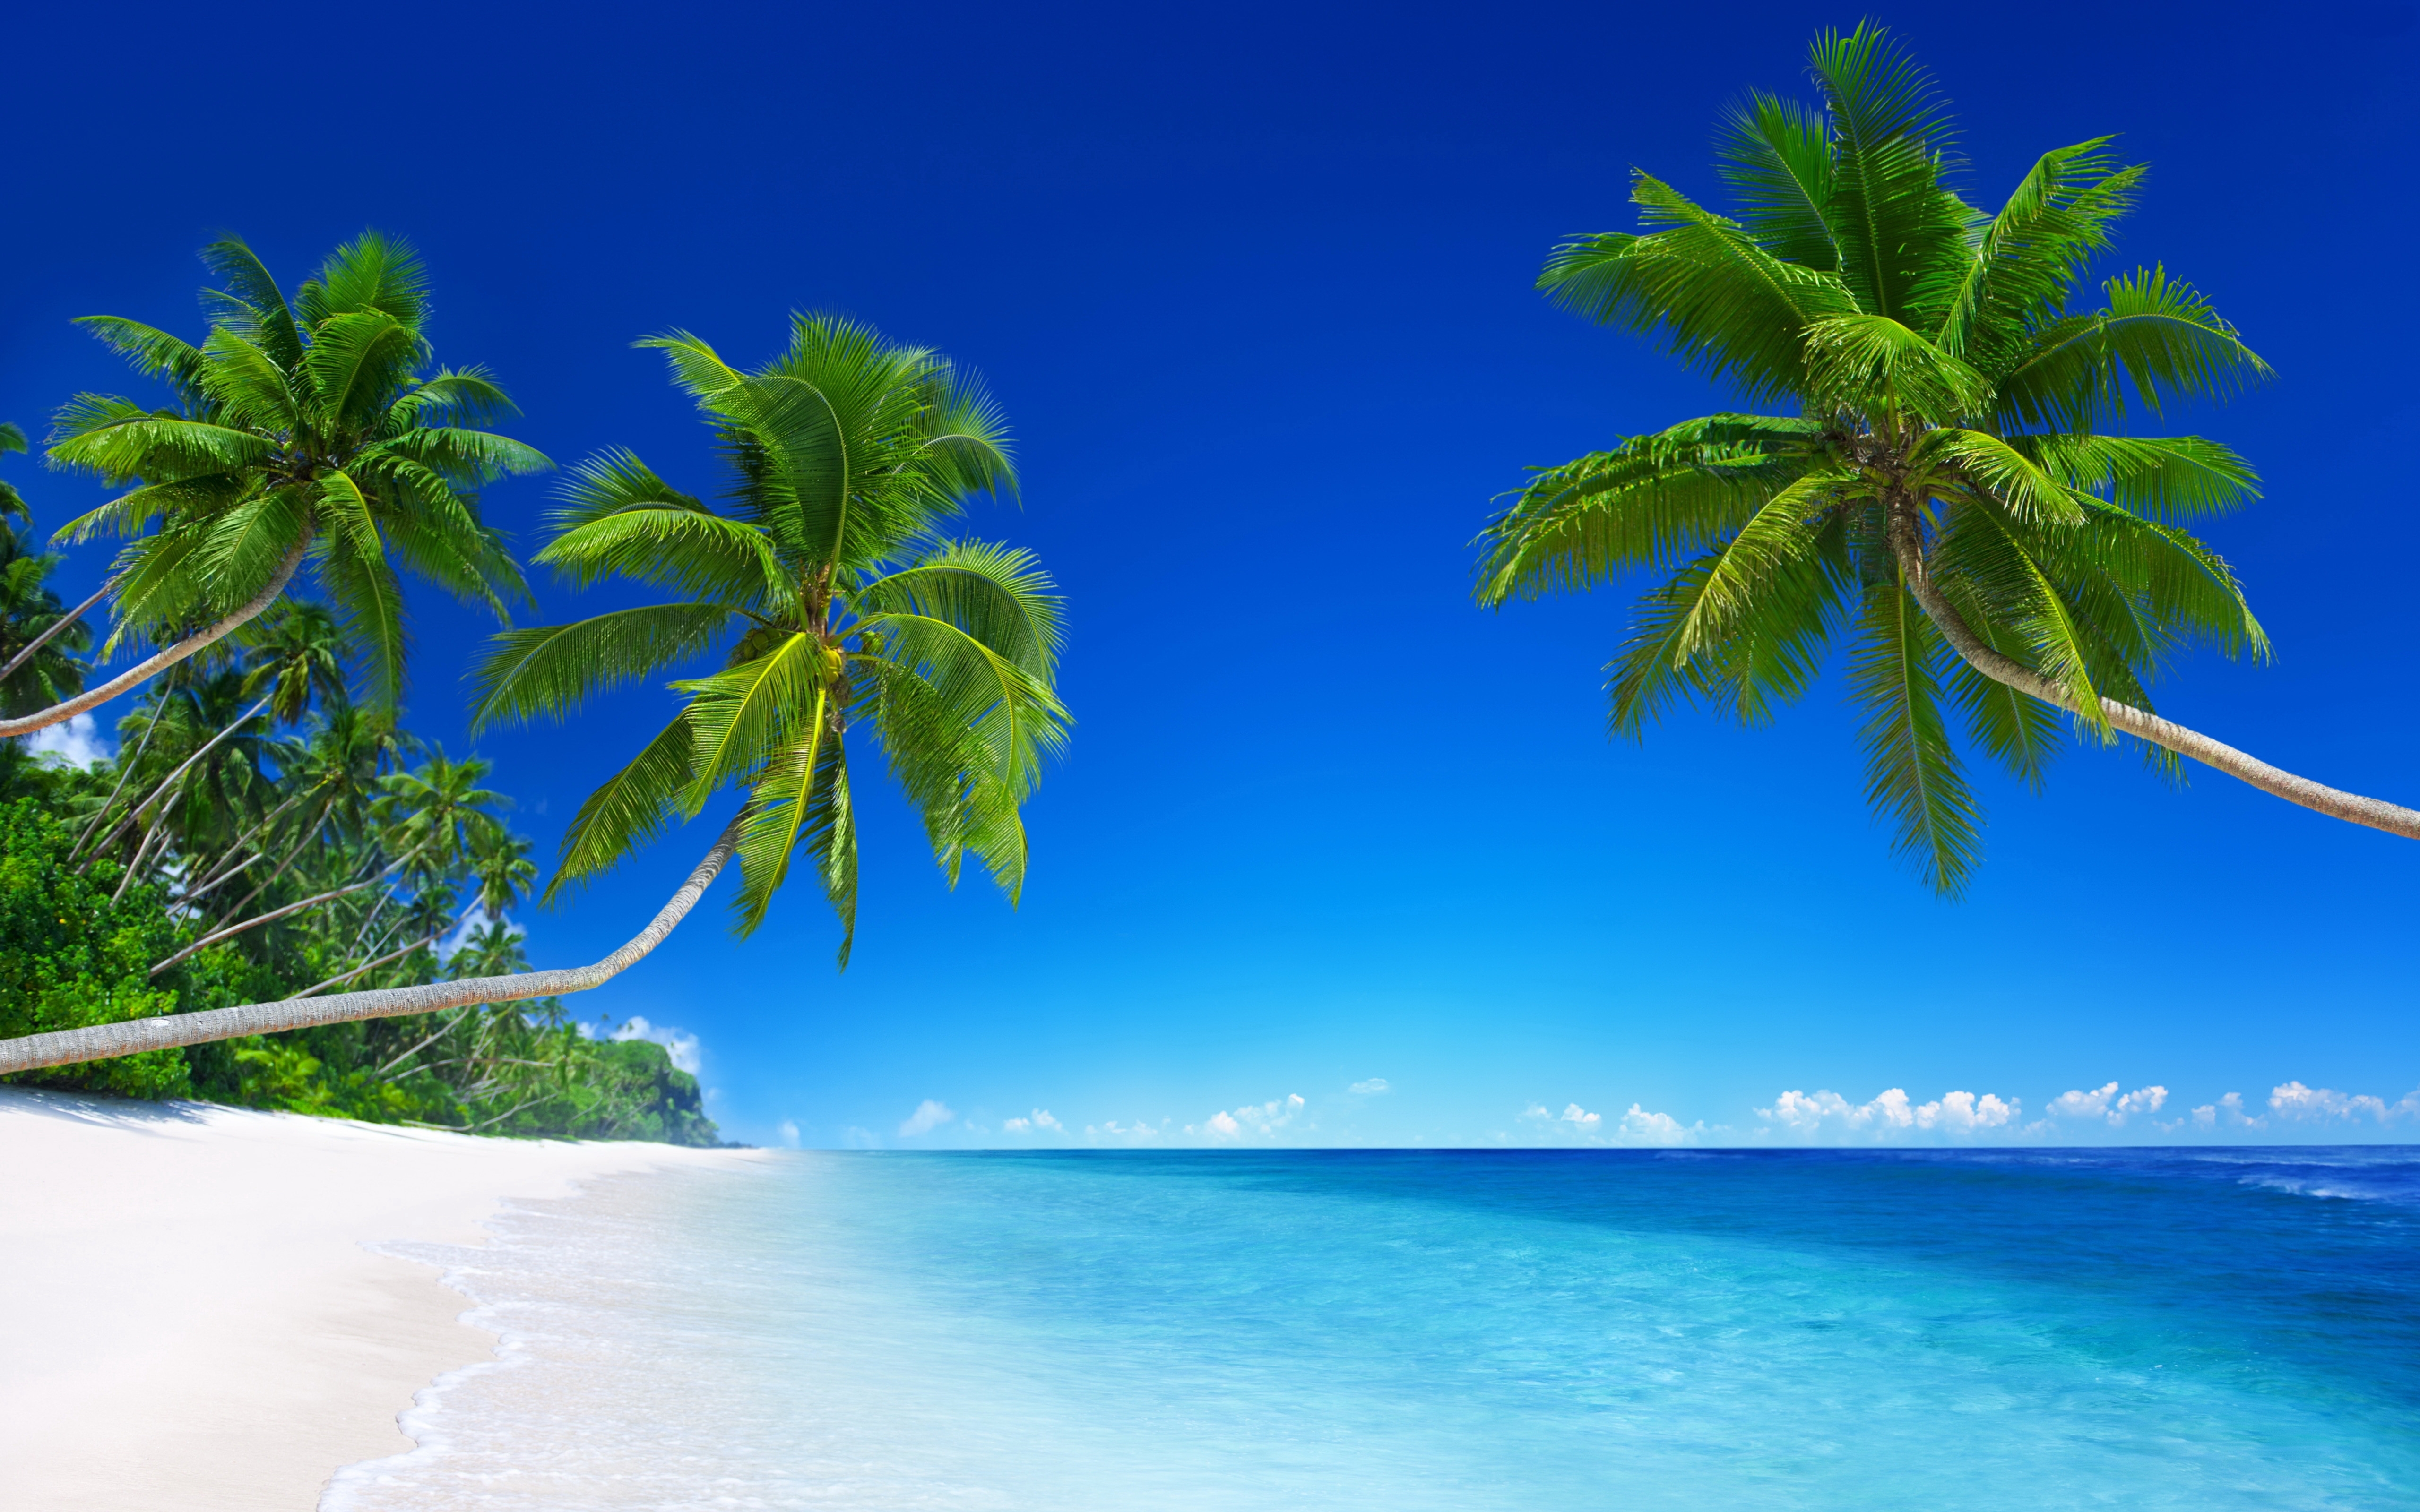 beaches &amp; islands hd wallpapers | beach desktop backgrounds,stock